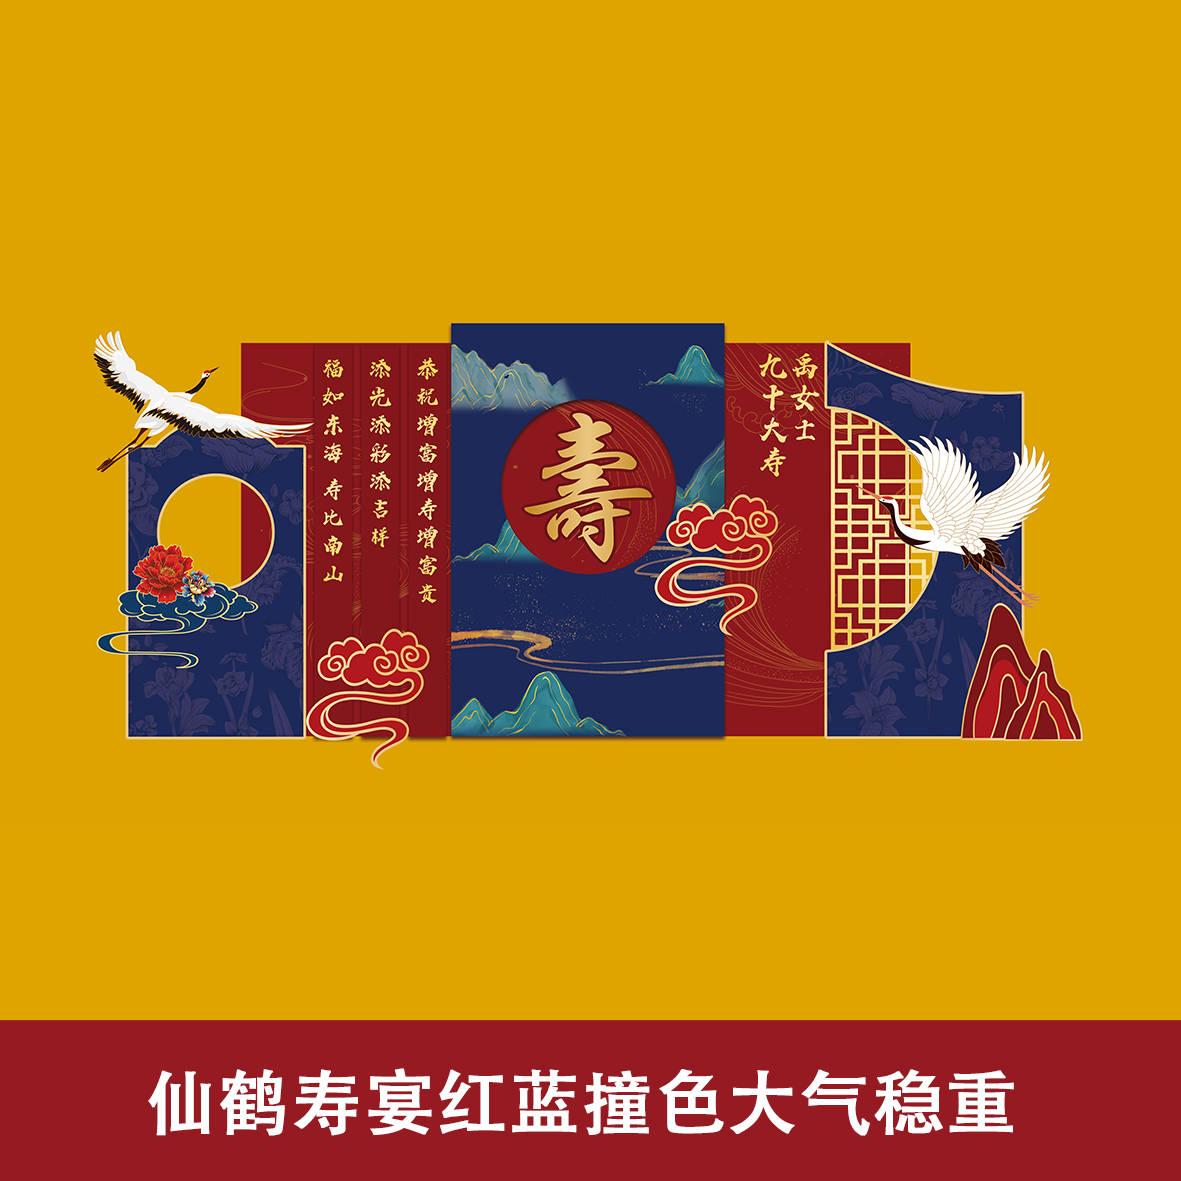 仙鹤寿宴红蓝撞色大气稳重老人生日装饰布置背景板素材文件ps格式